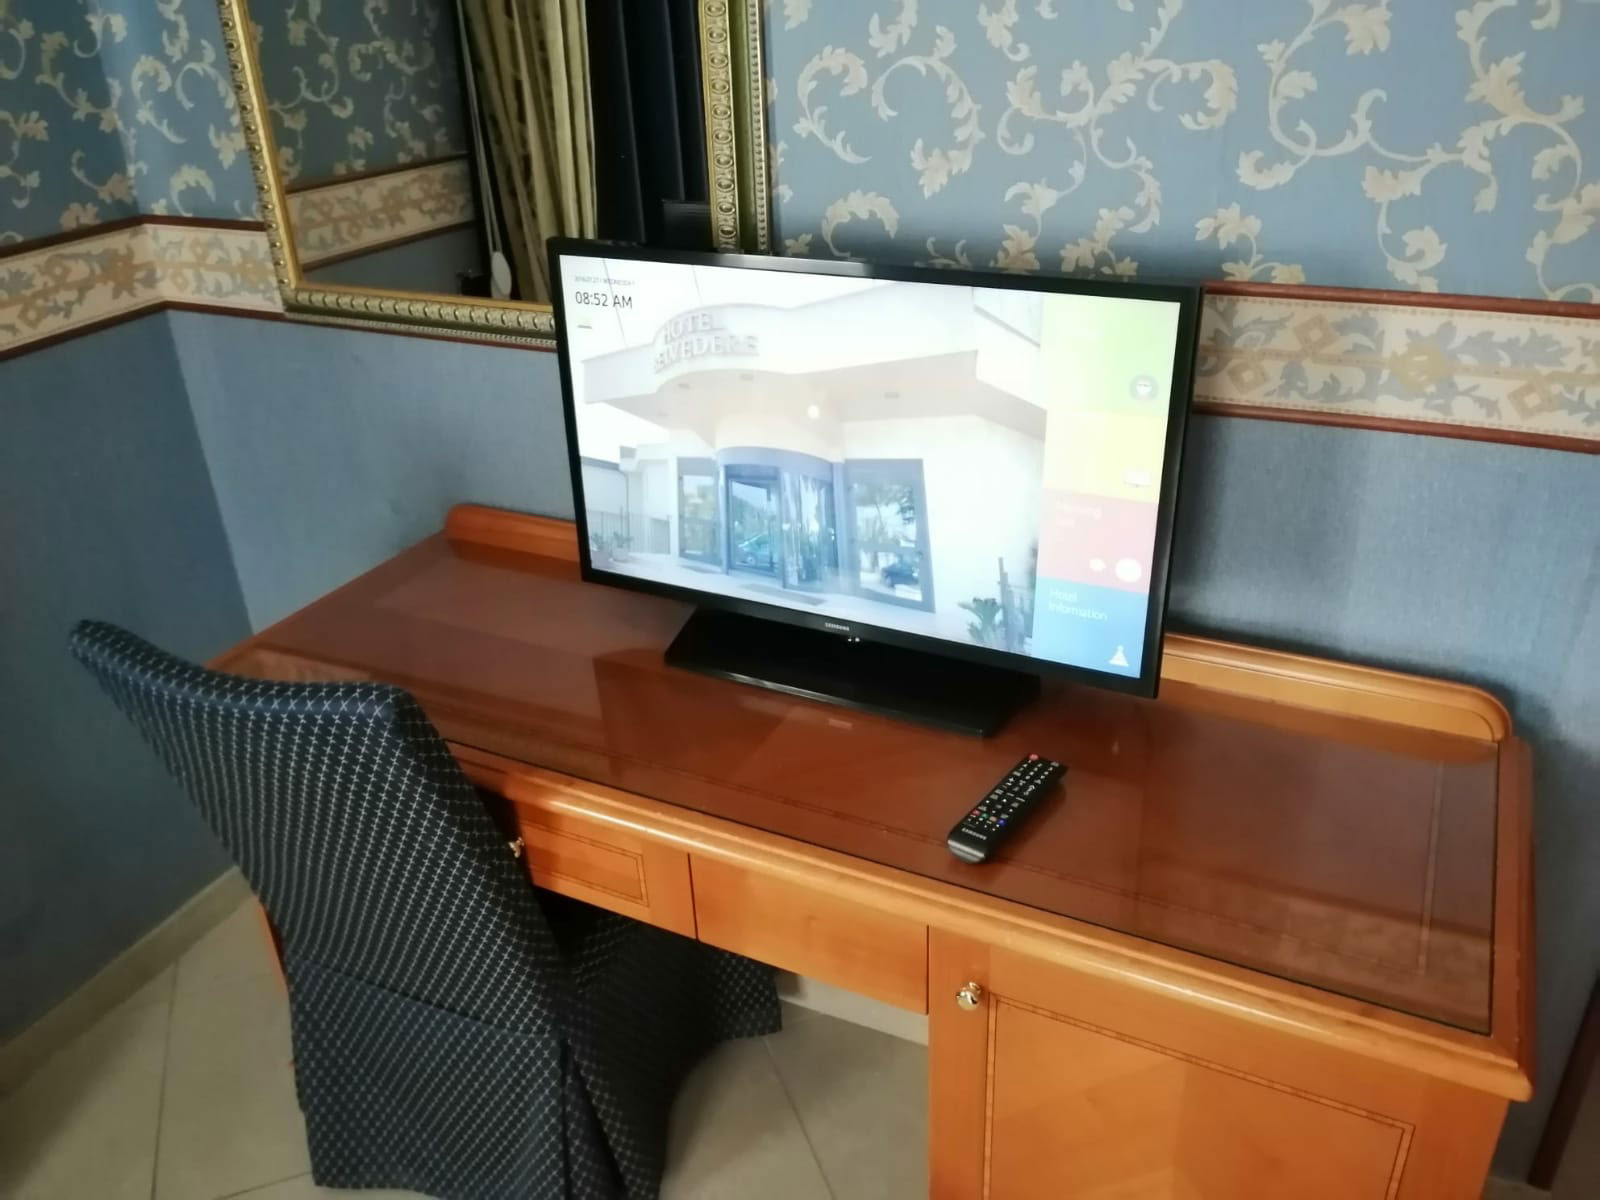 Samsung hotel tv sulla scrivania della camera